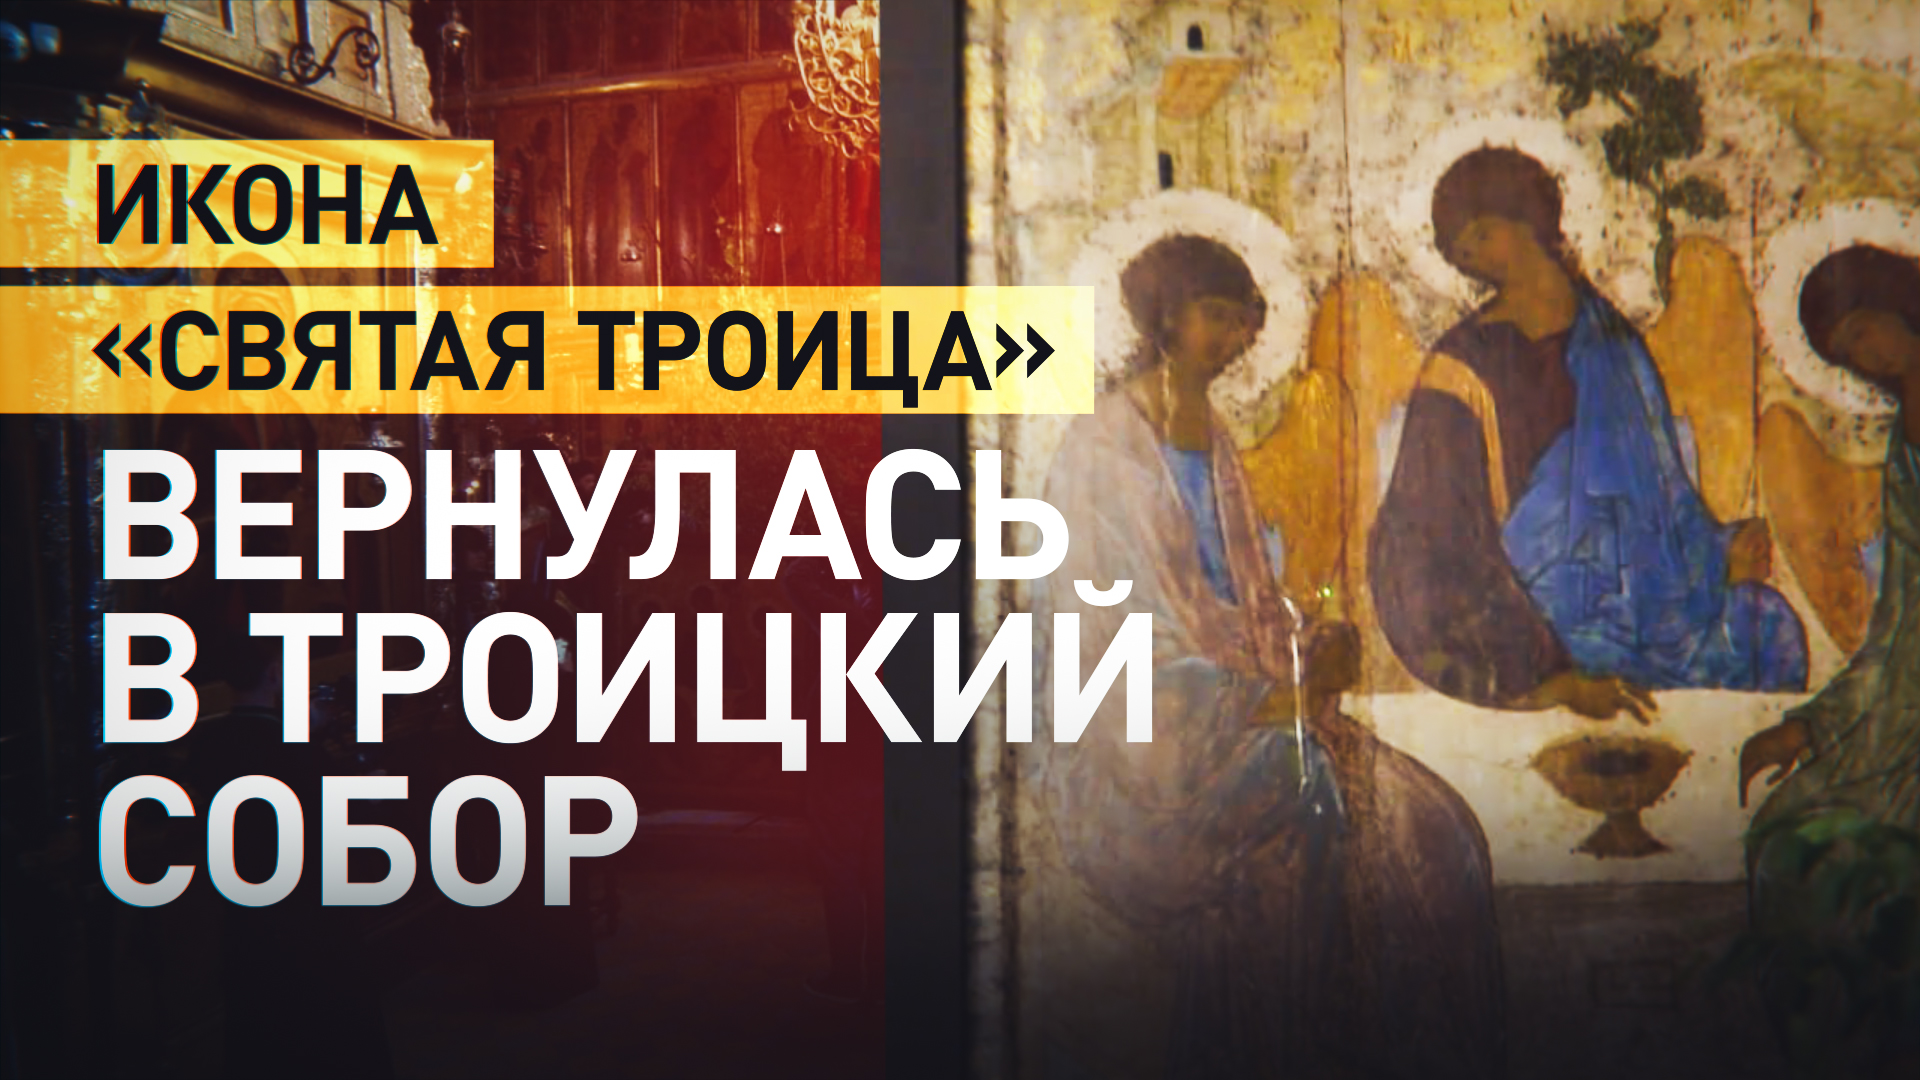 Икону «Троица» Андрея Рублёва привезли из храма Христа Спасителя в Троице-Сергиеву лавру